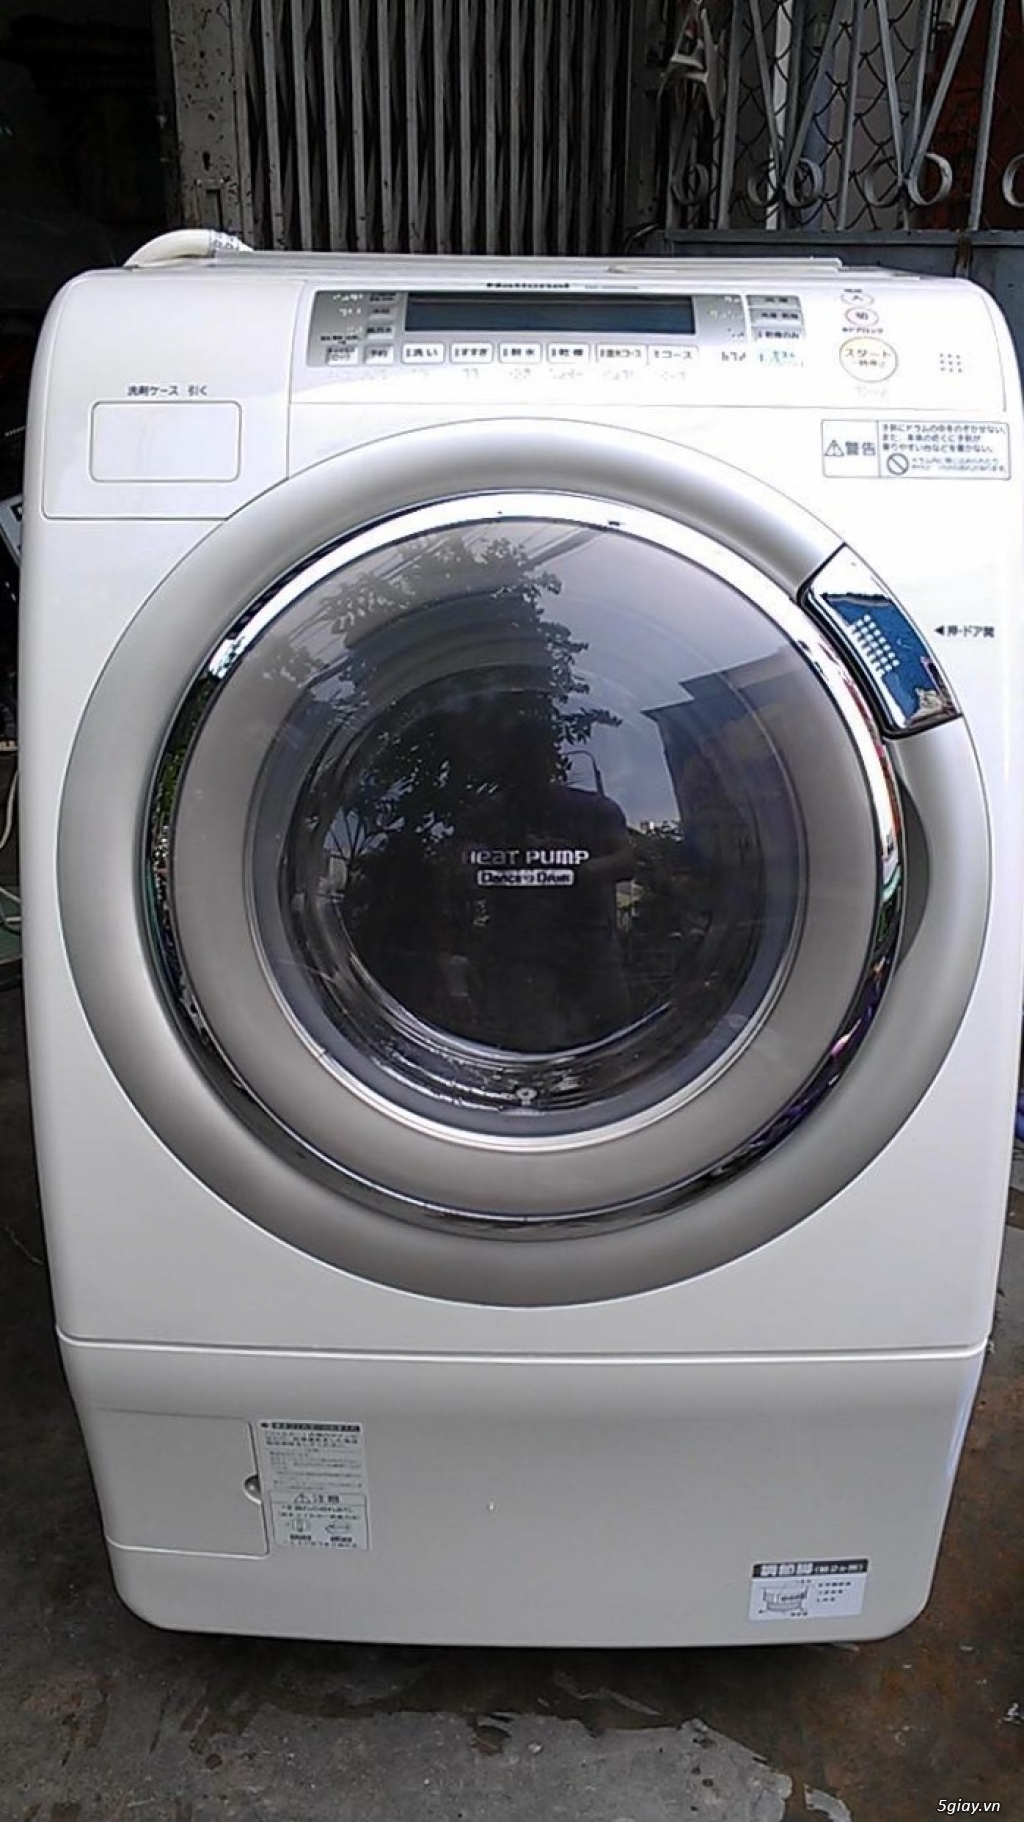 Máy giặt siêu bền lưu kho Nhật Panasonic VR 5600, VR 3600, VR 2200 - 7